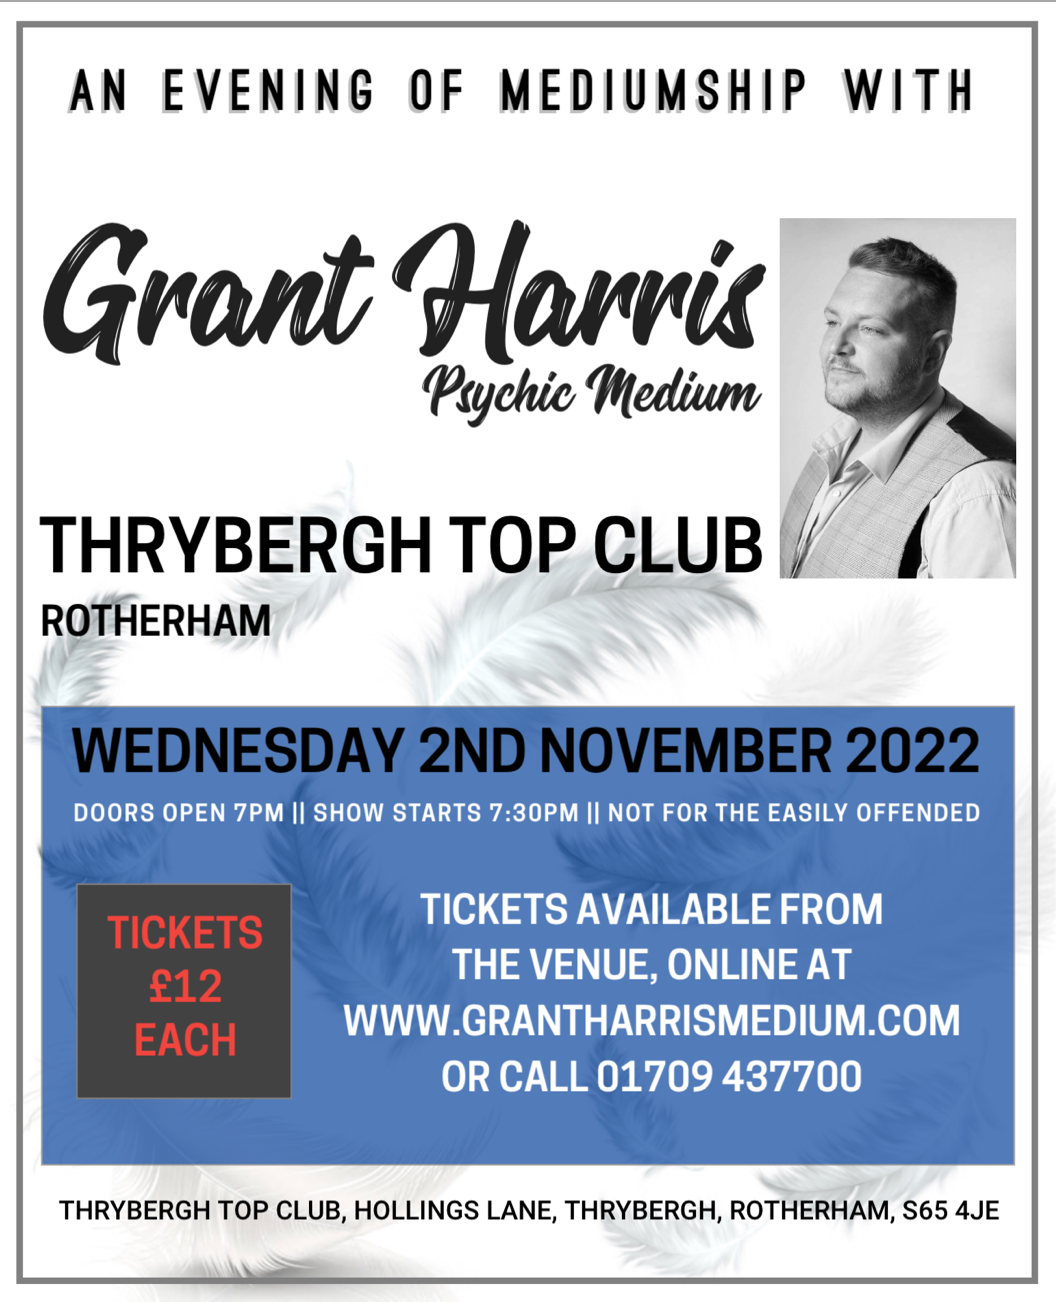 Thrybergh Top Club, Weds 2nd November 2022